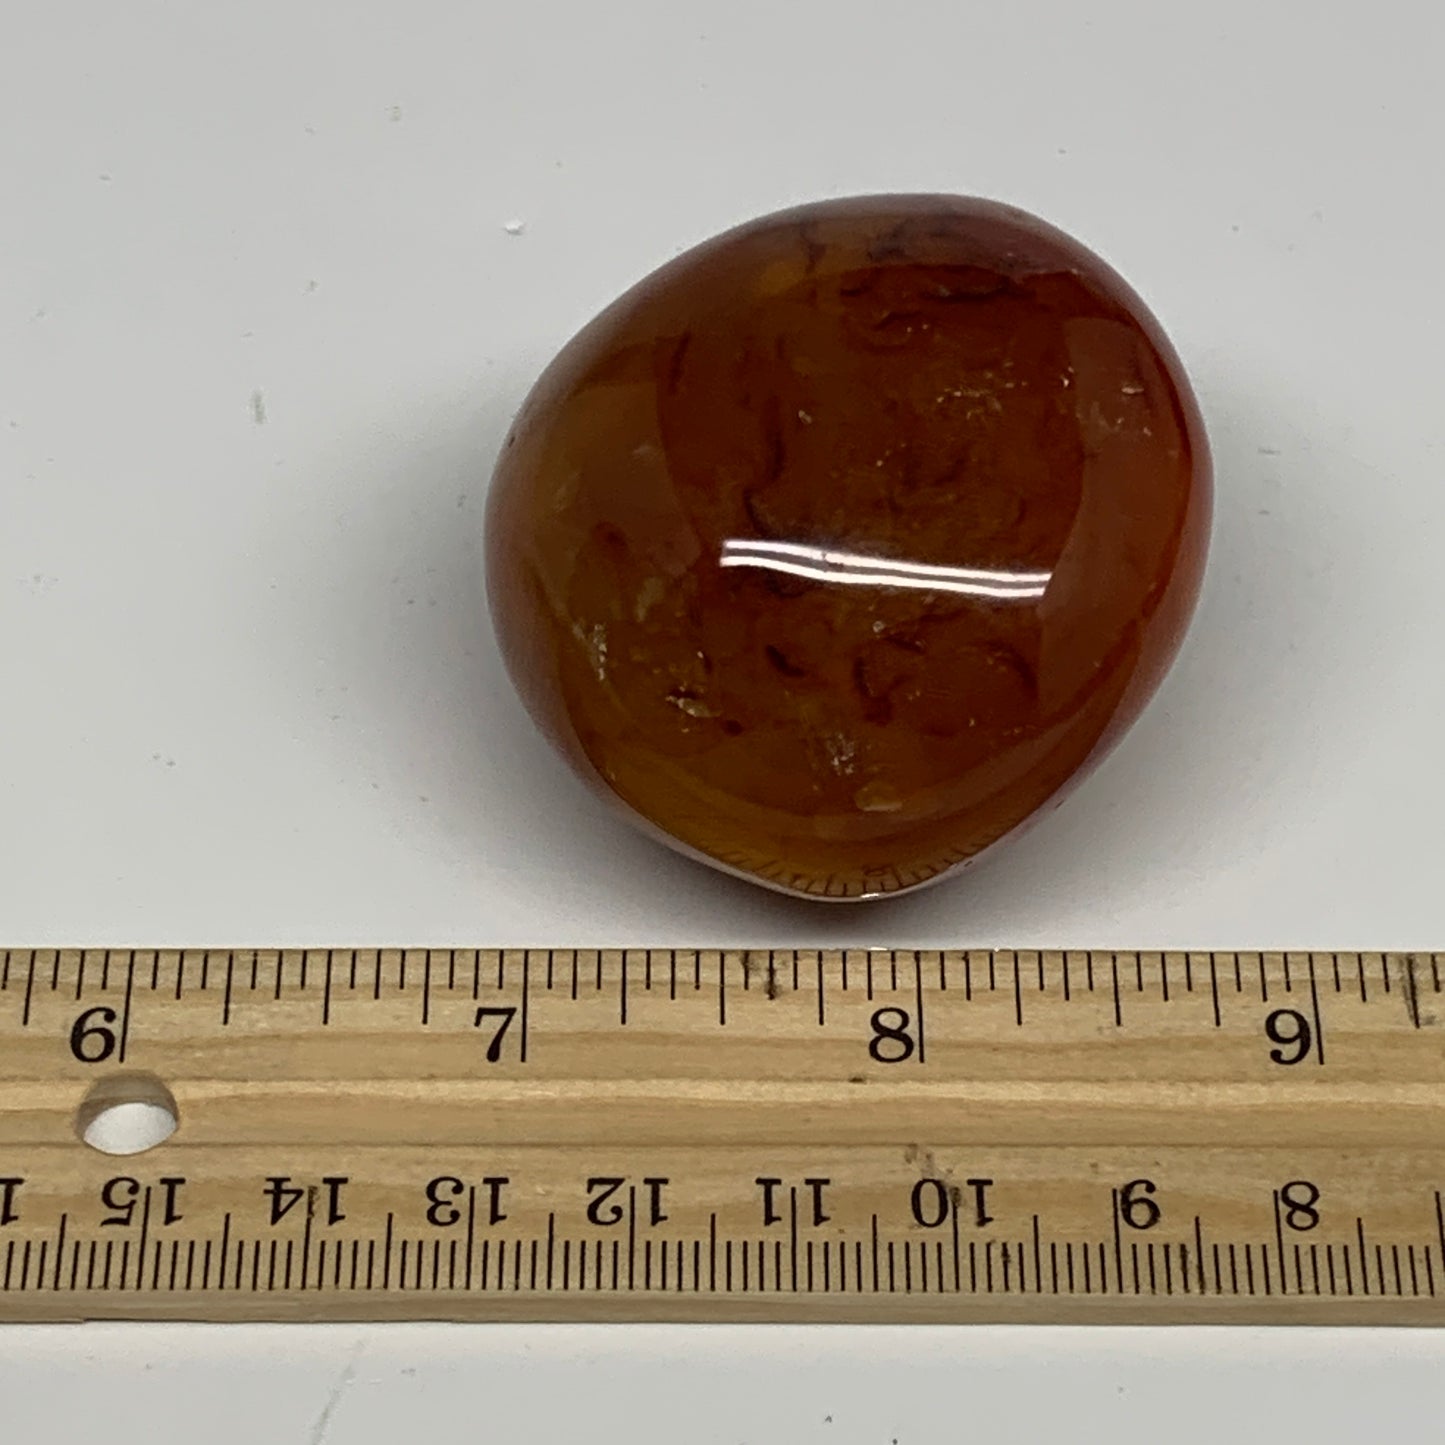 117.5g, 2"x1.9"x1.4", Red Carnelian Palm-Stone Gem Crystal Polished, B28621